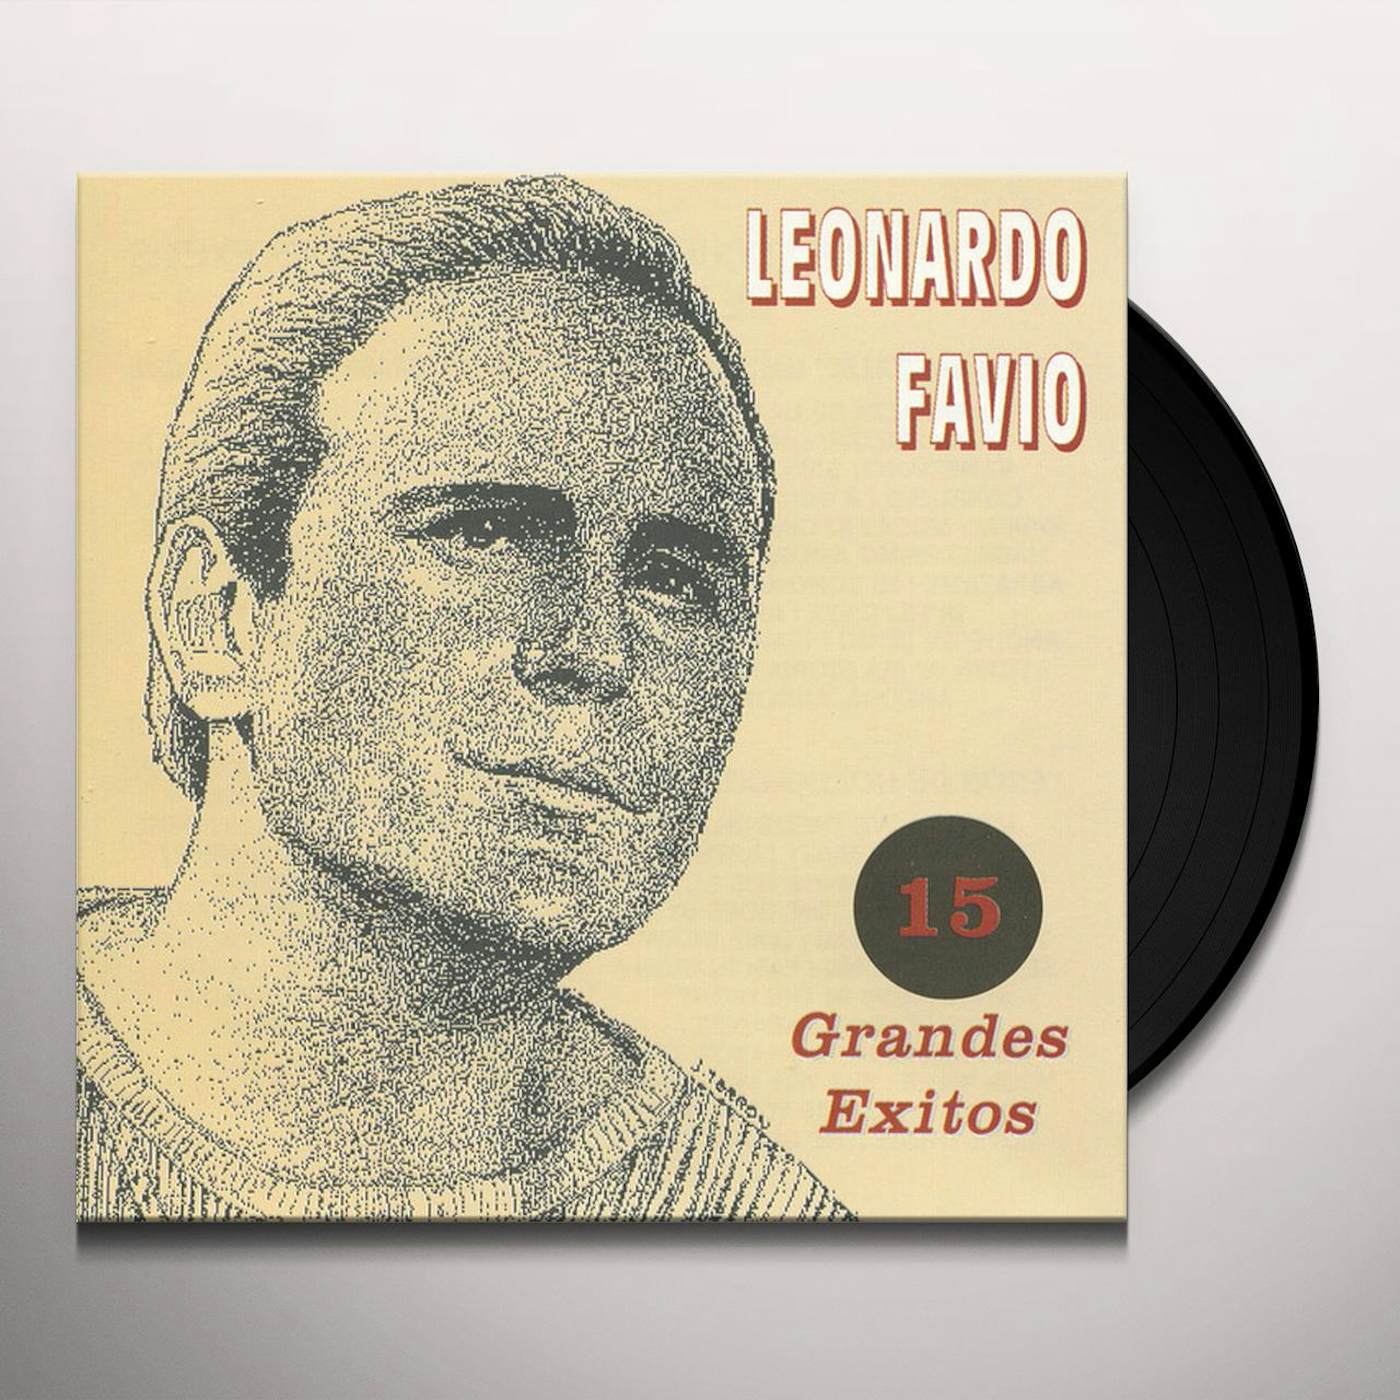 Leonardo Favio GRANDES EXITOS Vinyl Record